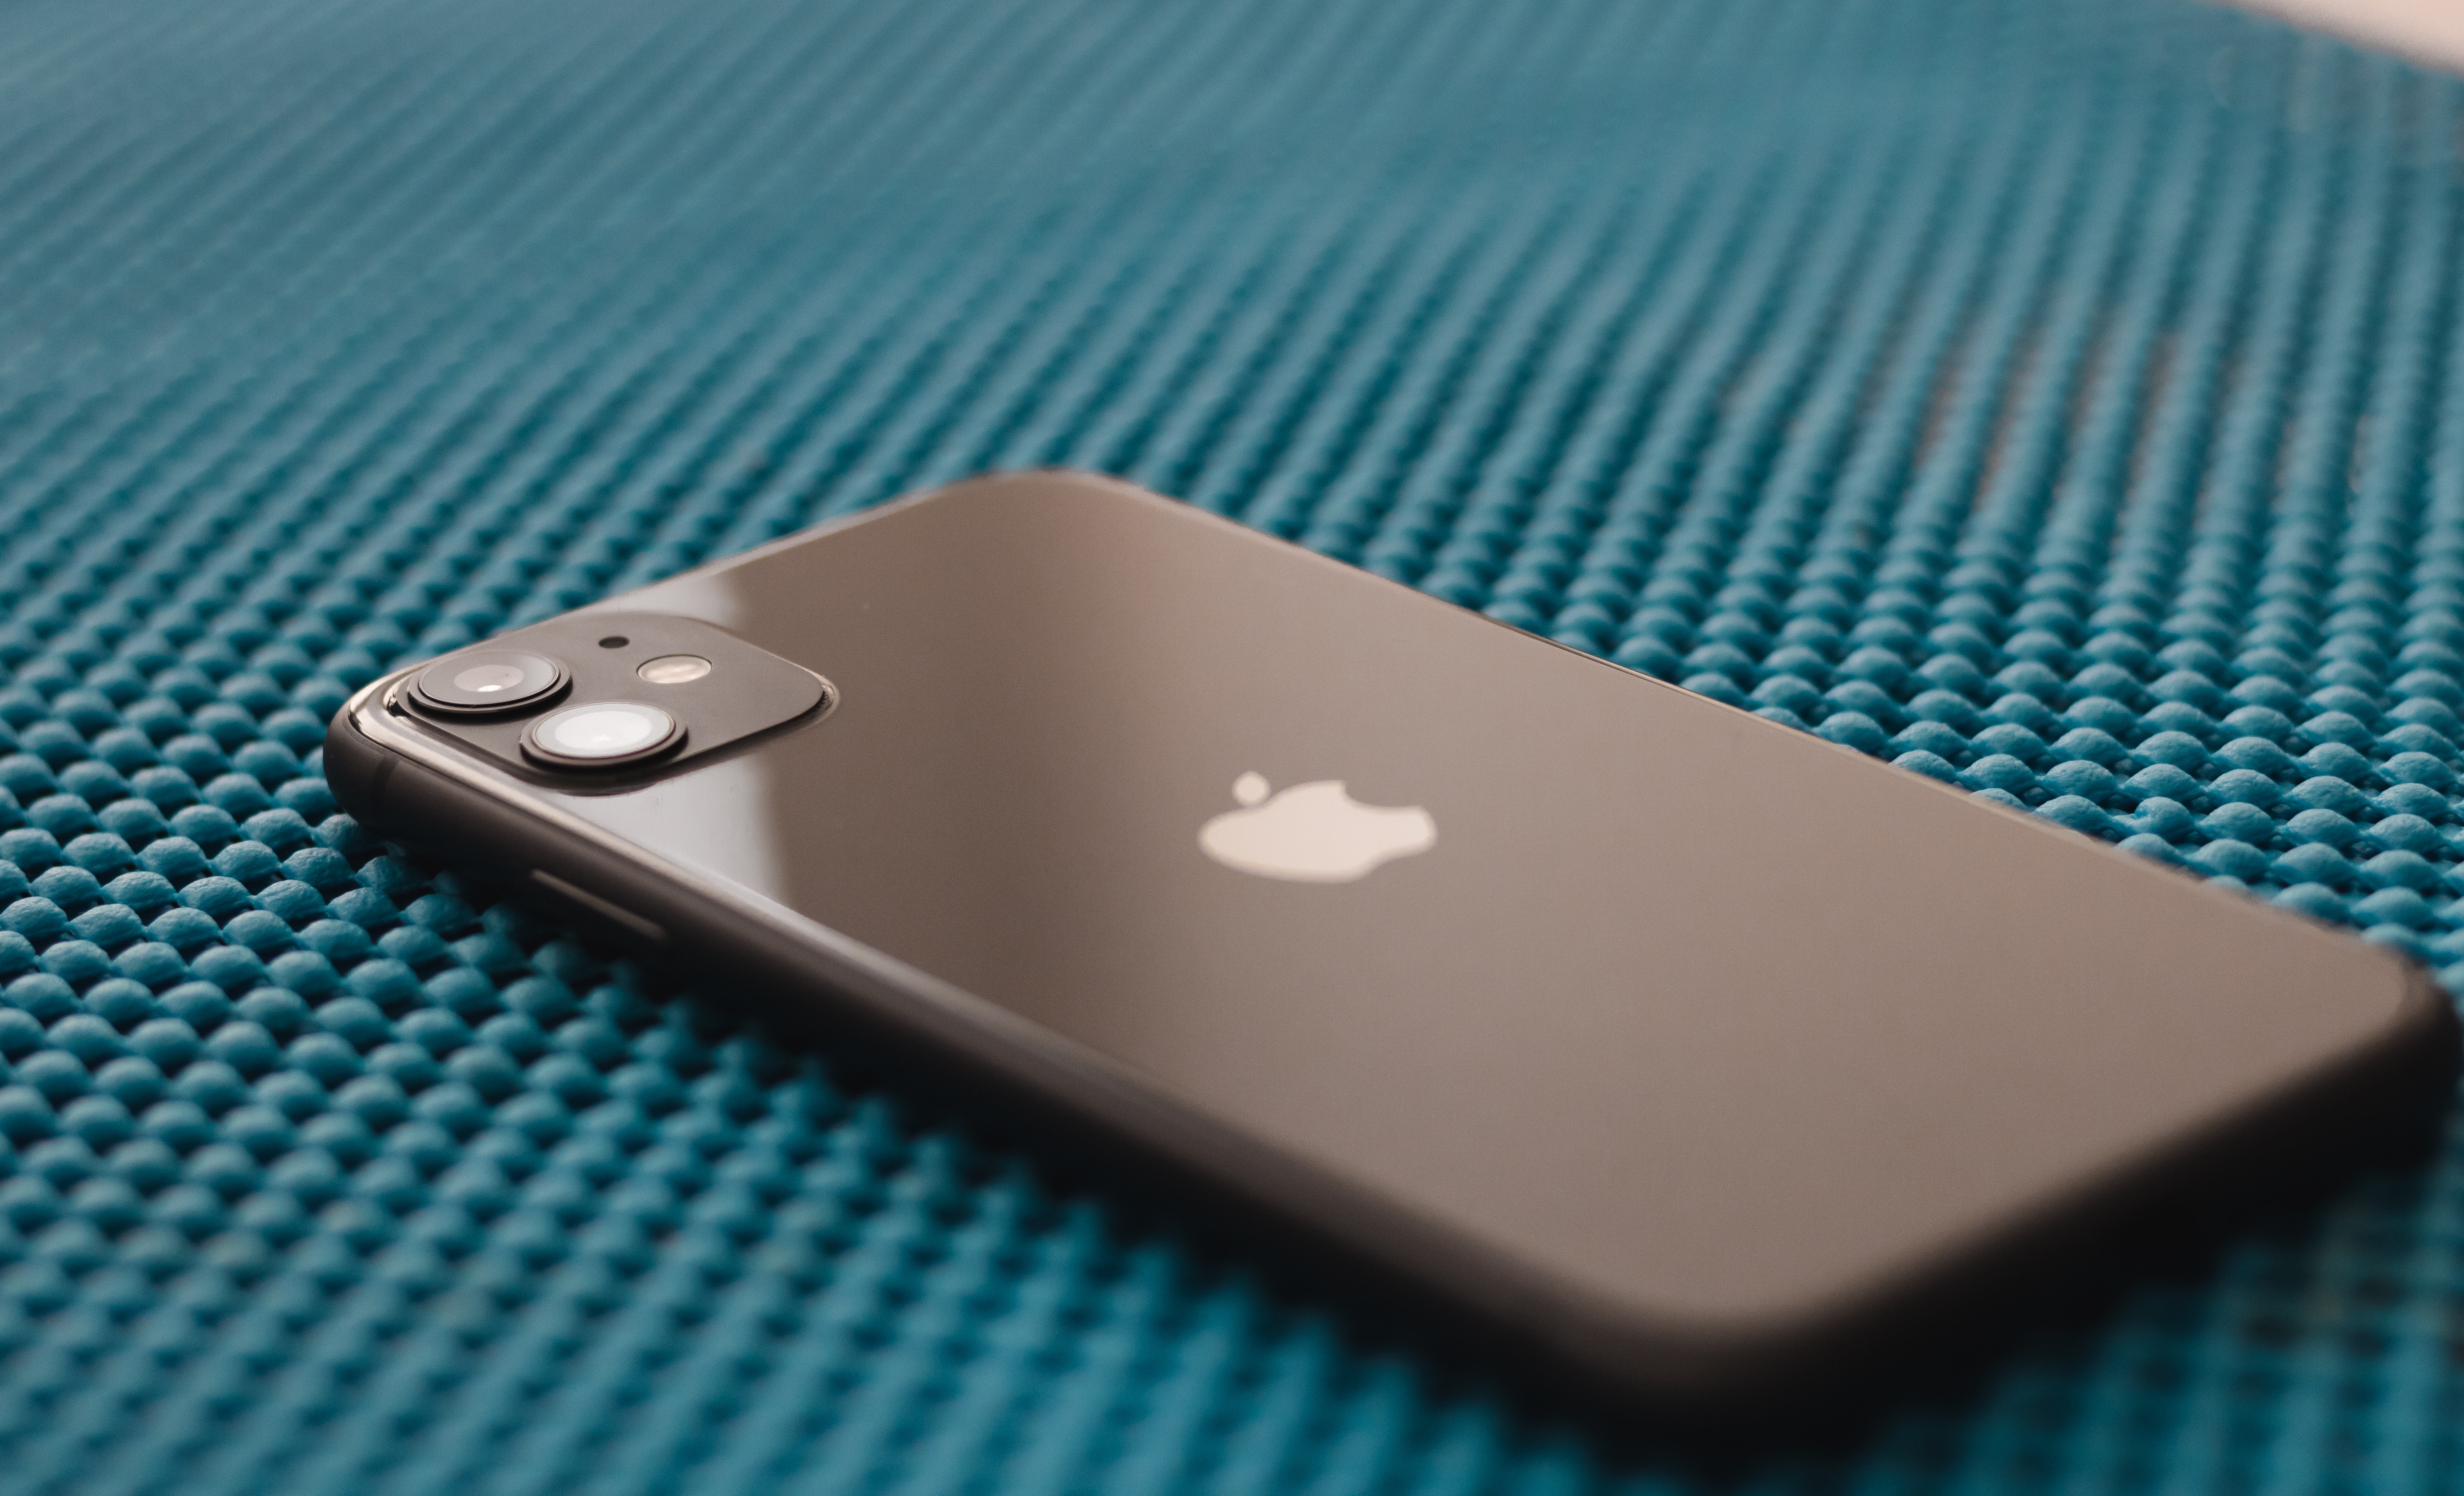 Apple va abandonner ce modèle d'iPhone qu'on aimait bien